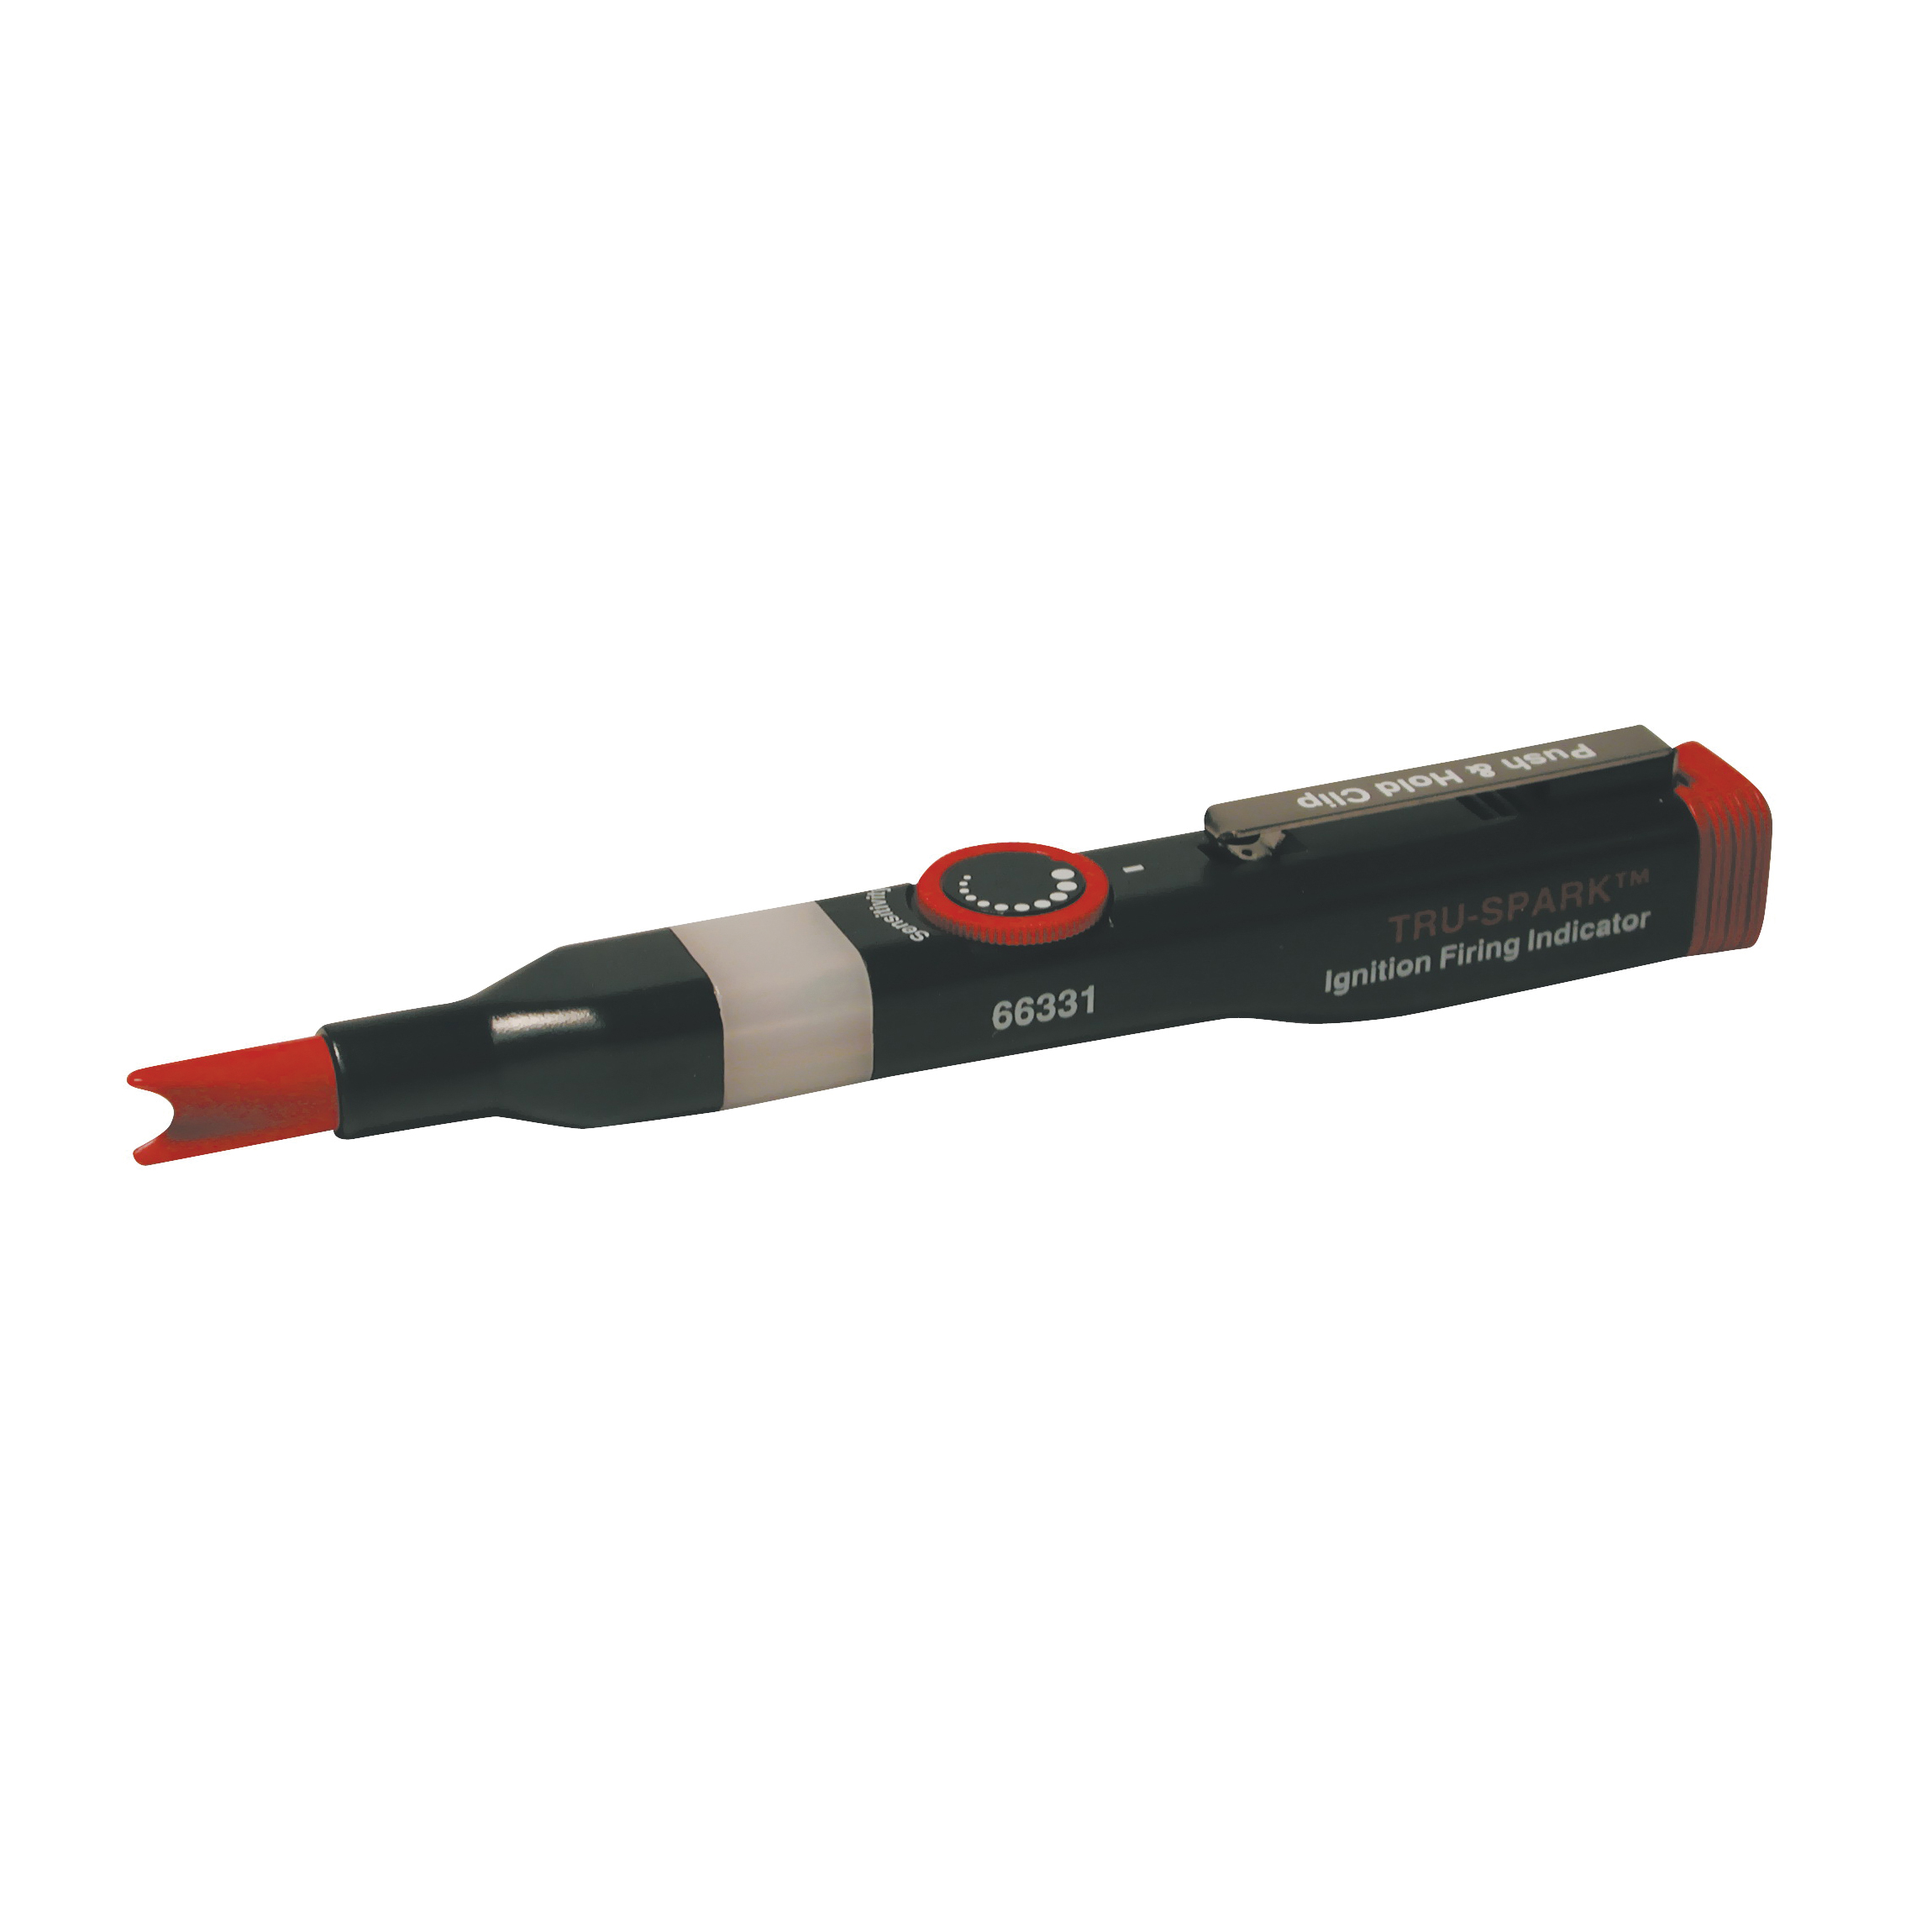 Tru-Spark 66331 Ignition Firing Indicator with Pocket Clip, LED Display, Black